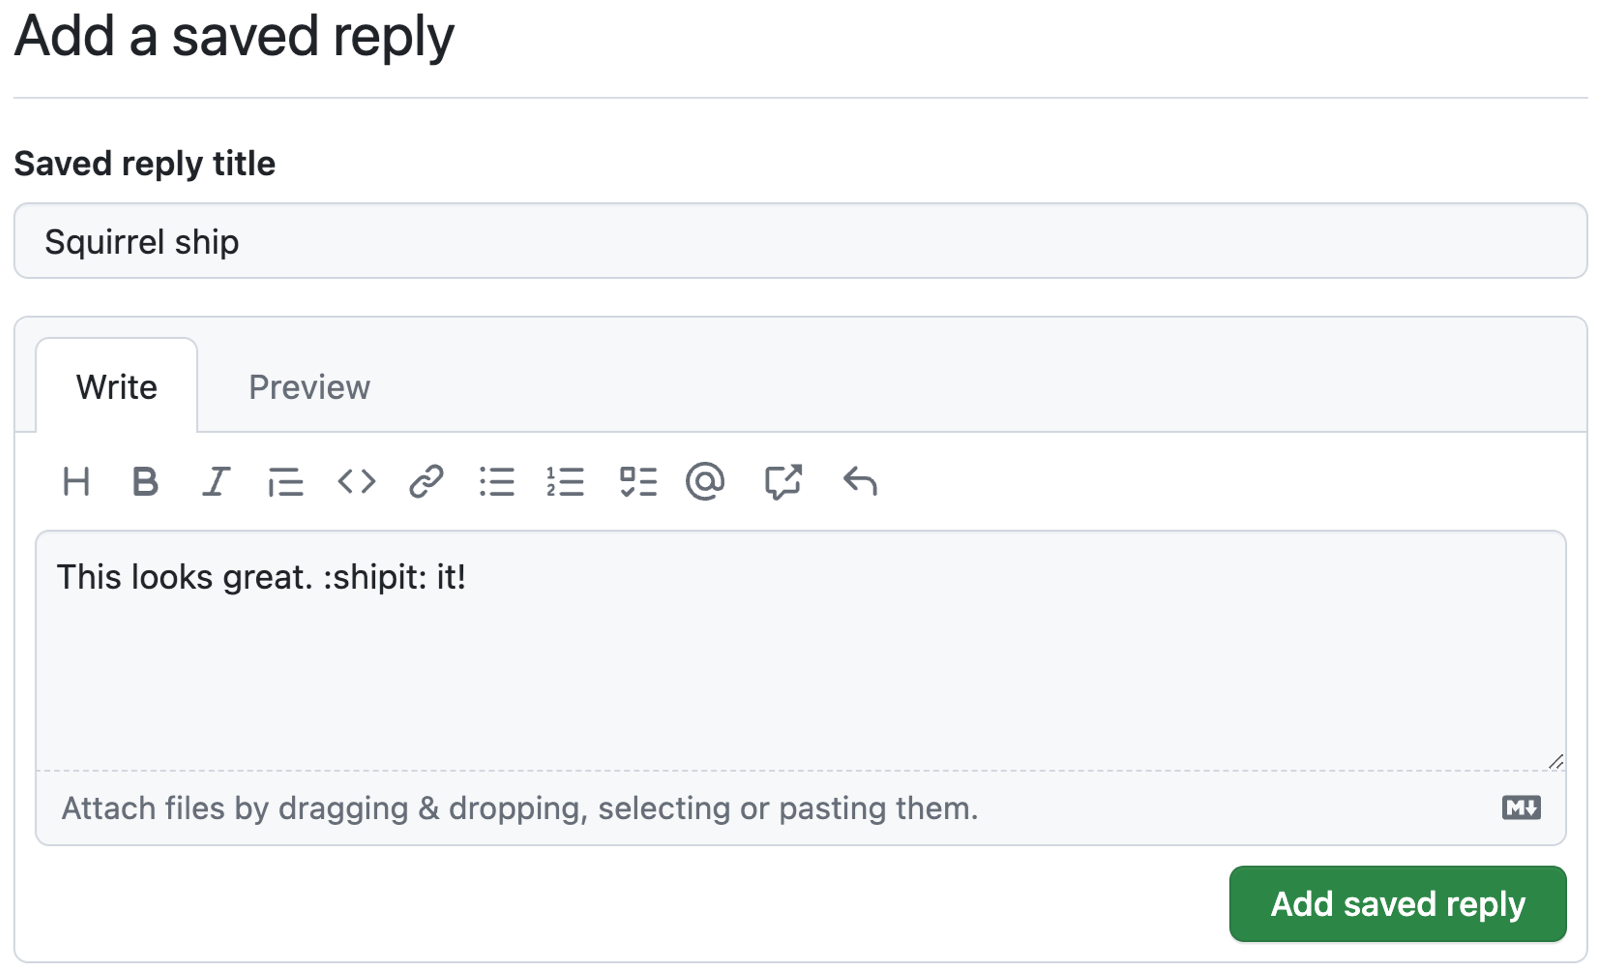 GitHub の保存済み返信のスクリーンショット。タイトルは "リスの船" です。"書いてください" ボックスにマークダウンが表示されています。 テキストには "This looks great. :shipit: it!" とあります。